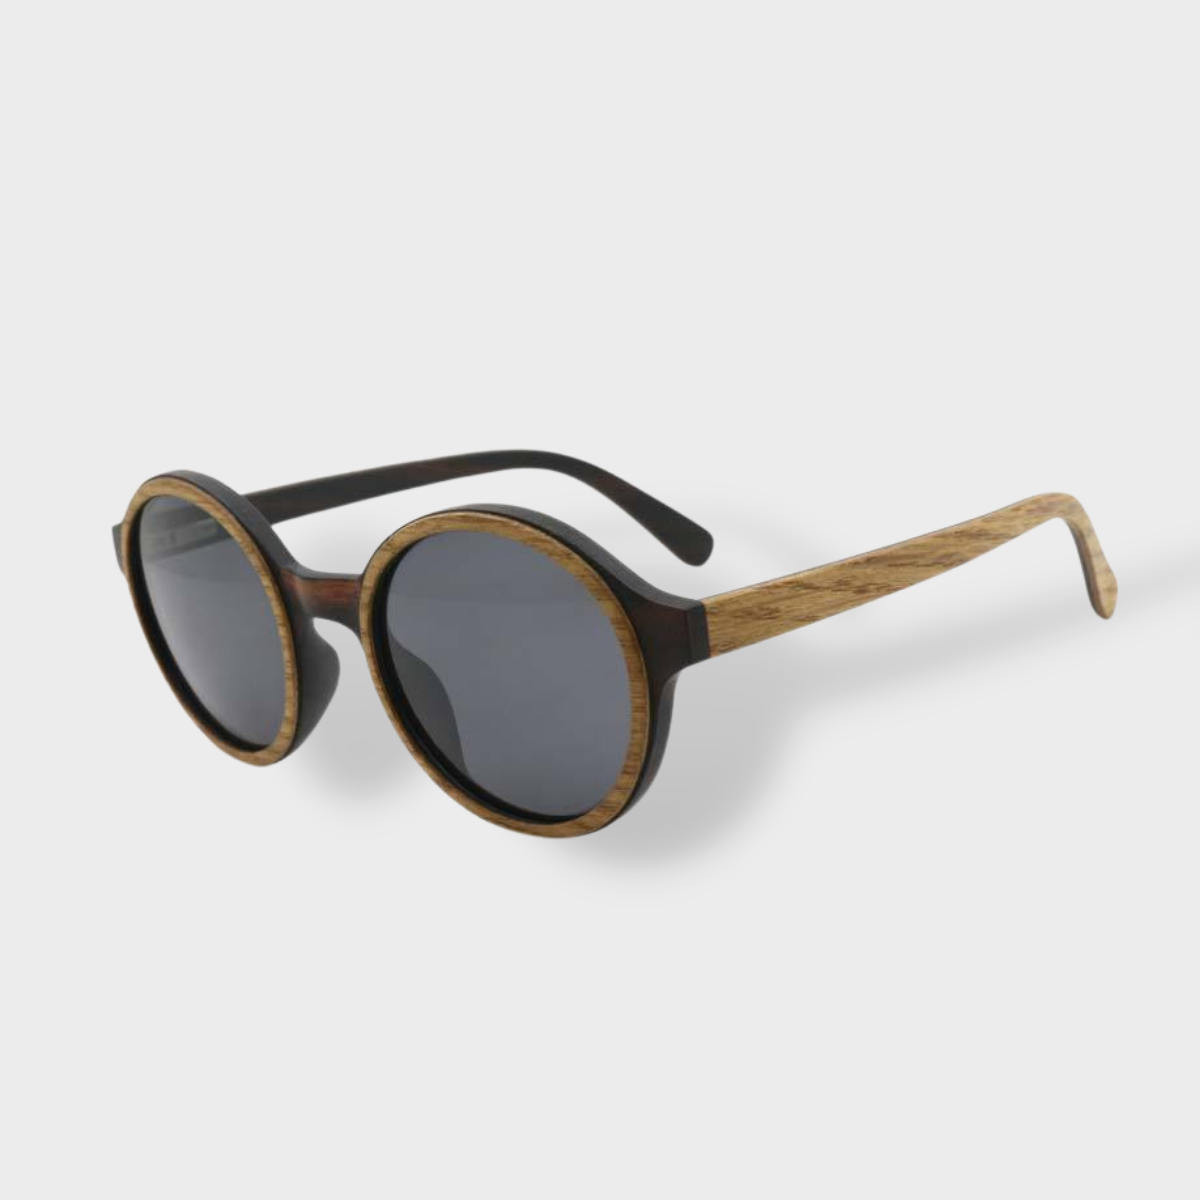 Óculos Escuros Frame Madeira Redondo - Aniston